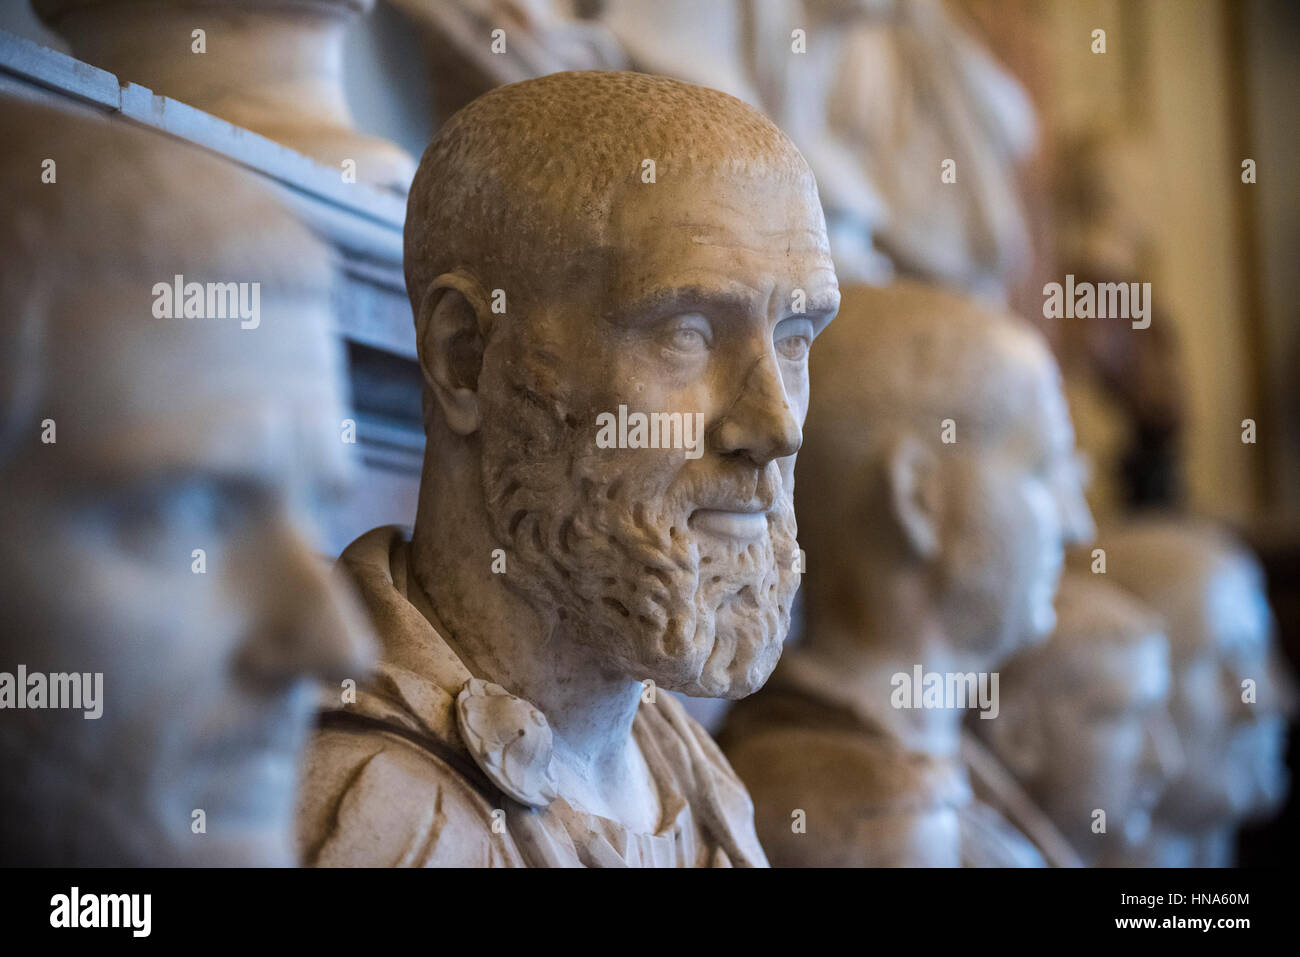 Roma. L'Italia. Busto di imperatore romano Pupienus Maximus (ca. 165/170-238), Museo Capitolino. Musei Capitolini. Foto Stock